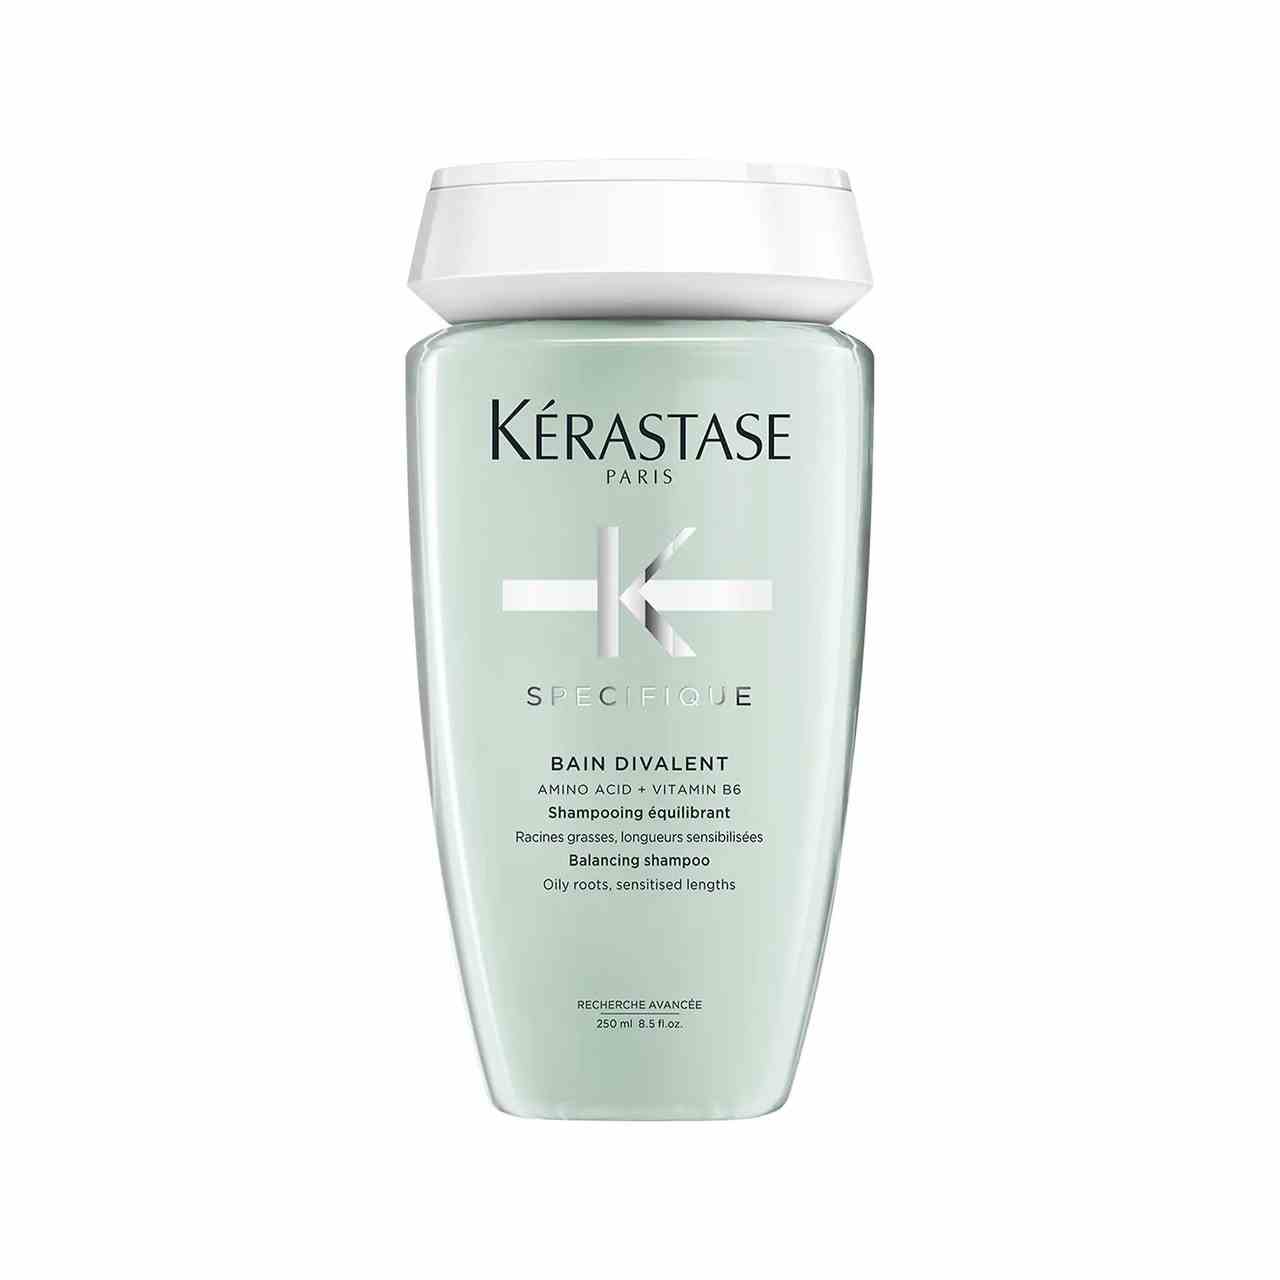 Kérastase Specifique Shampoo für fettige Kopfhaut hellgrüne Flasche Shampoo mit weißer Kappe auf weißem Hintergrund